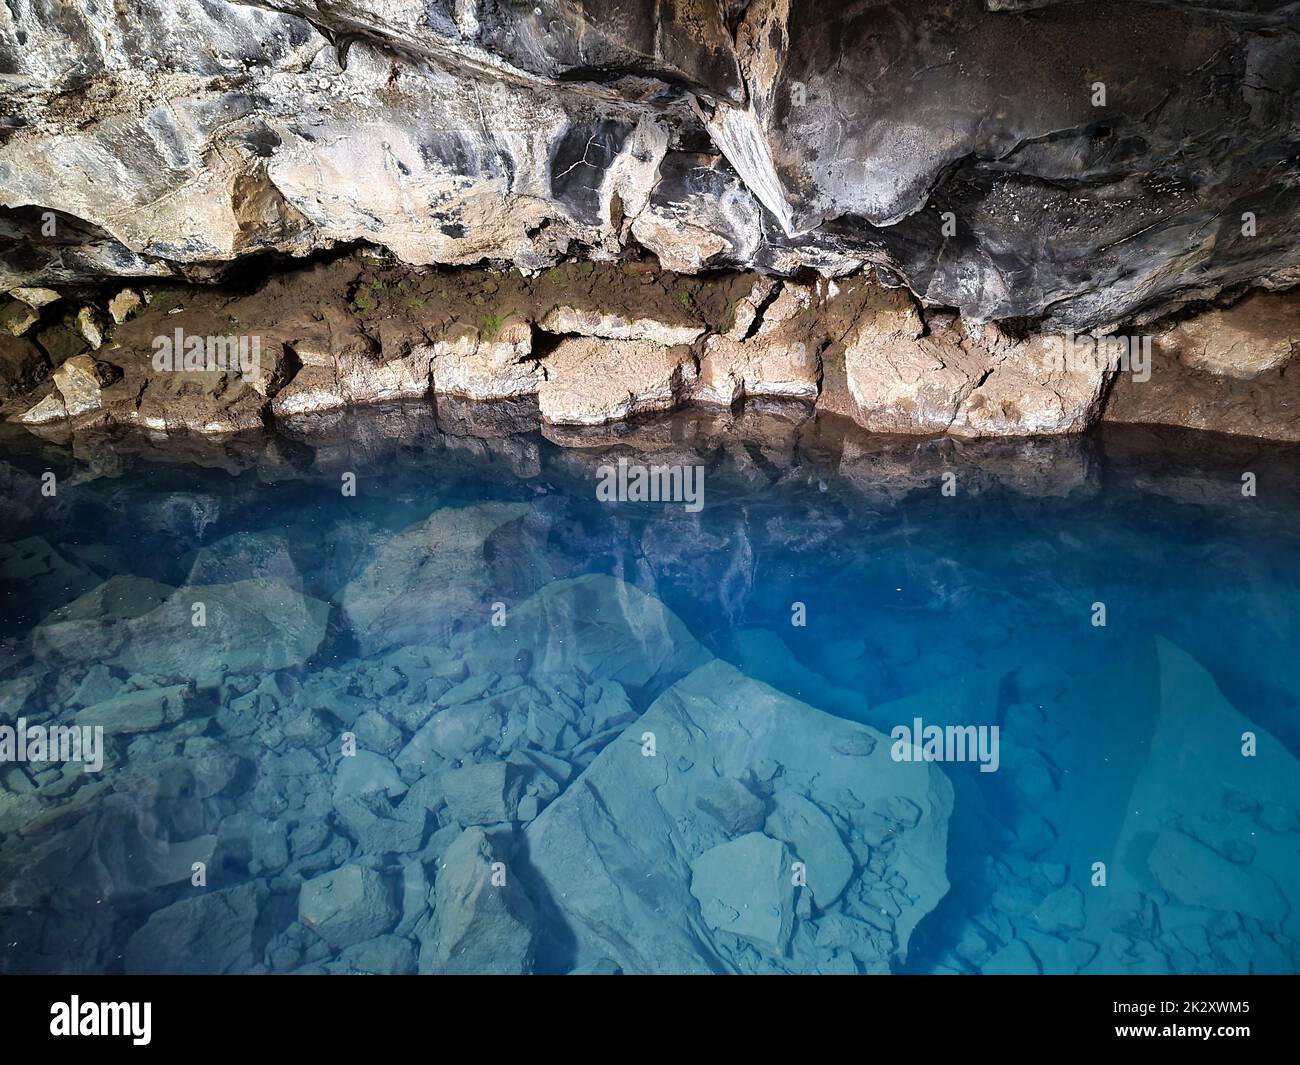 Ammira la grotta lavica di Grjotagja con acqua blu cristallina. Foto Stock